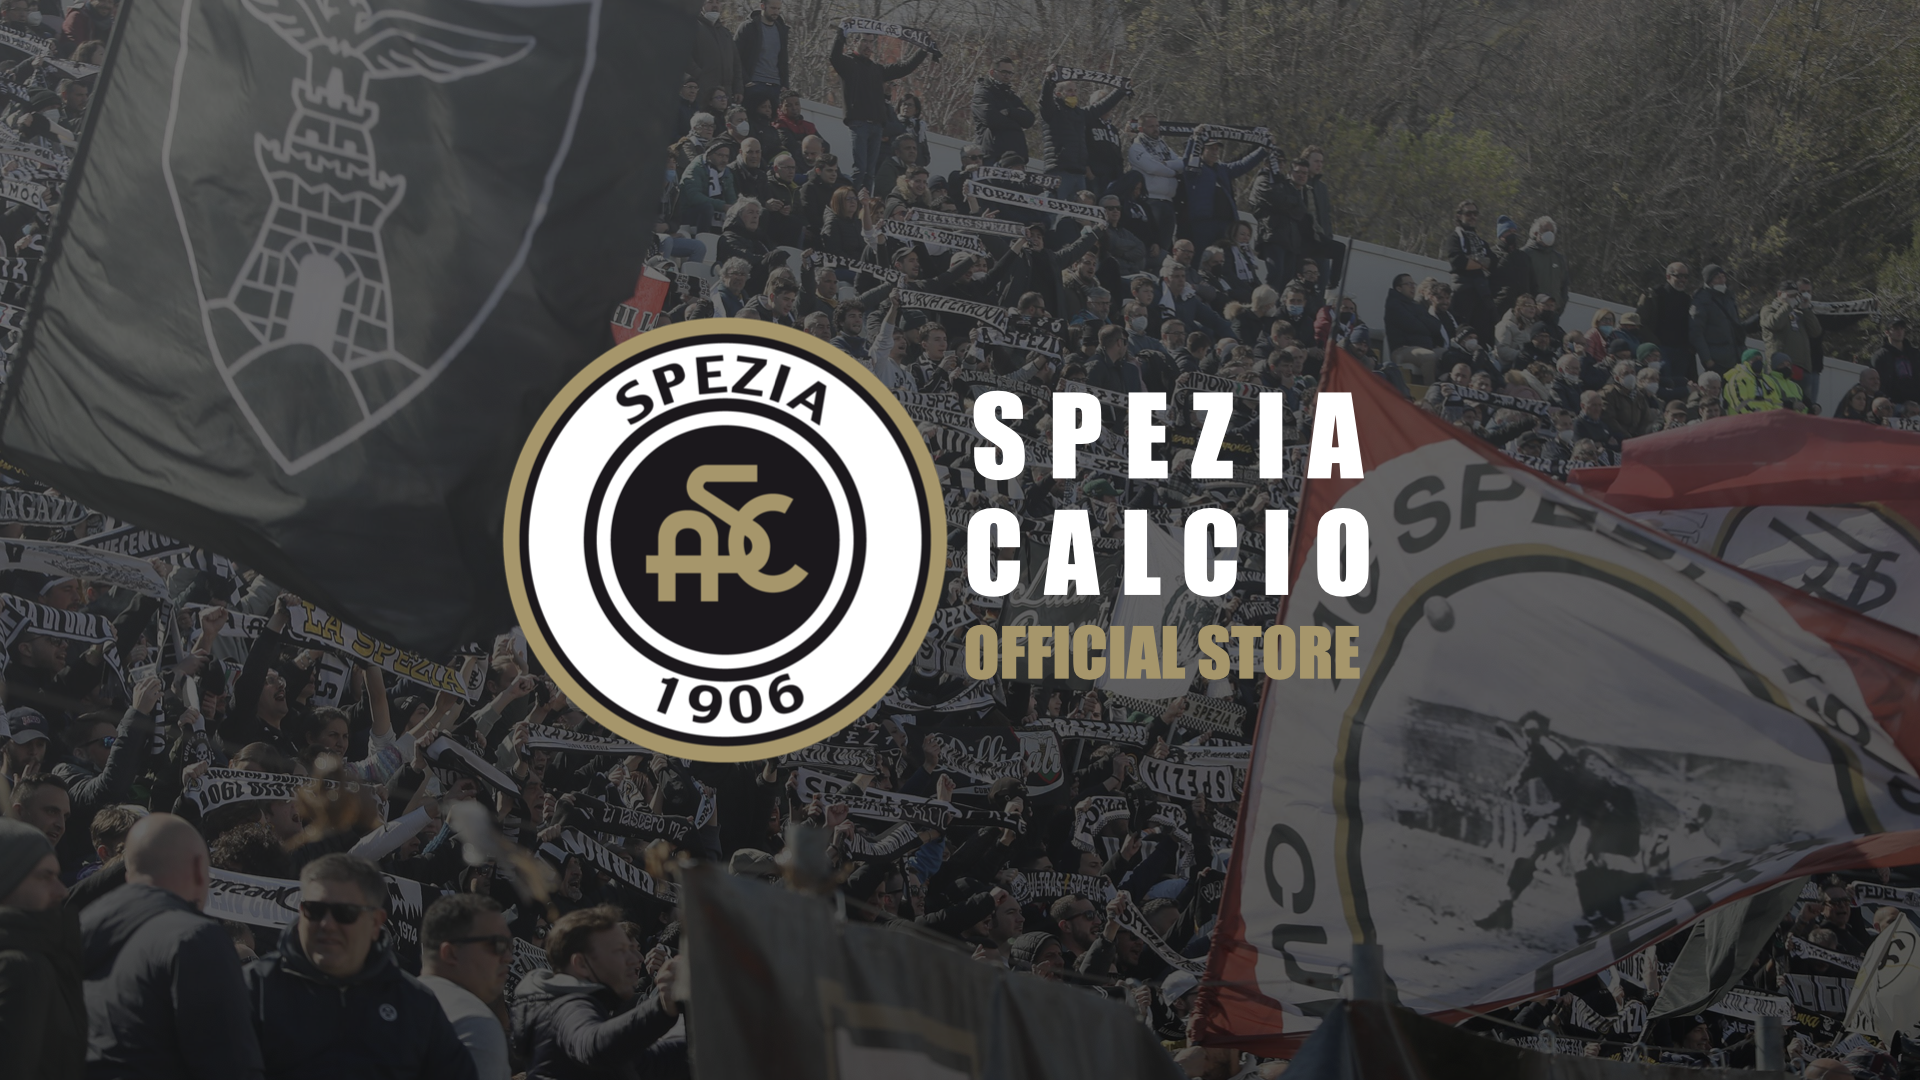 Special opening: Spezia Calcio Store